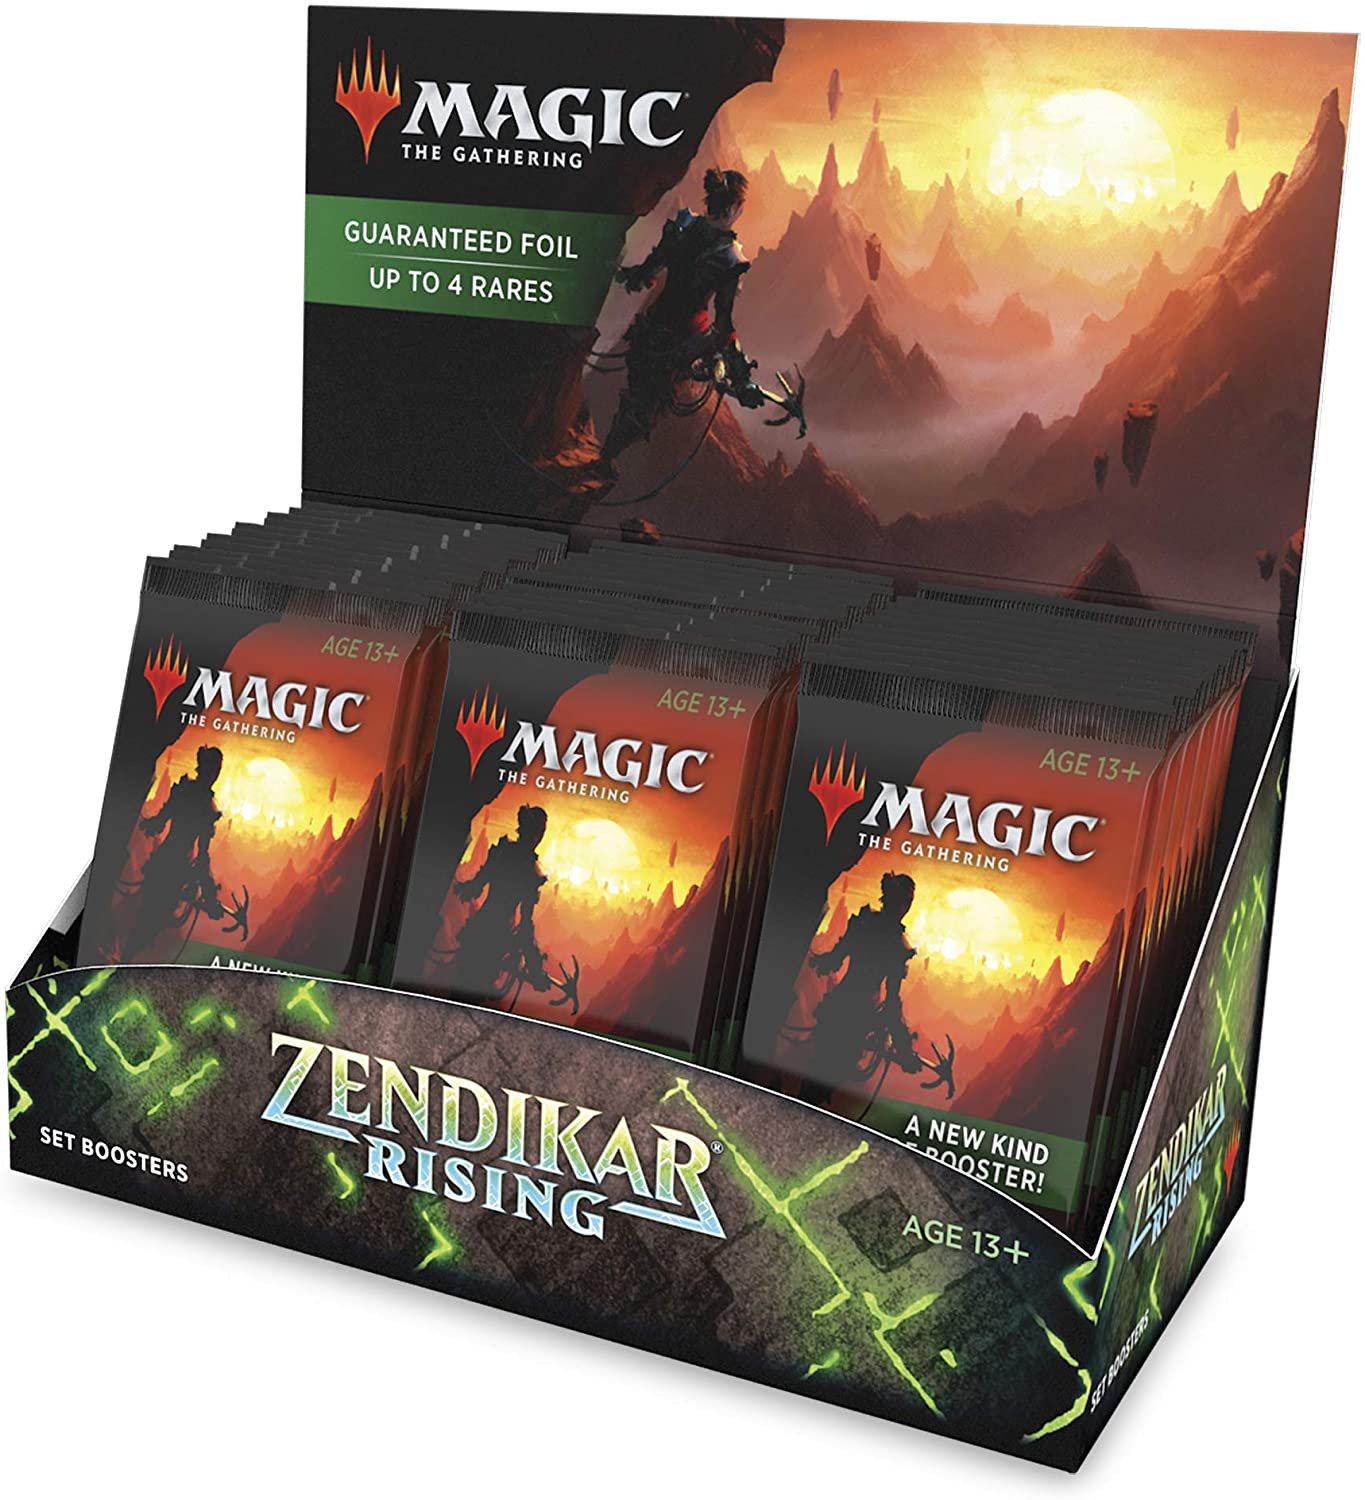 Magic The Gathering: Zendikar Rising Set Booster Box (Sealed)